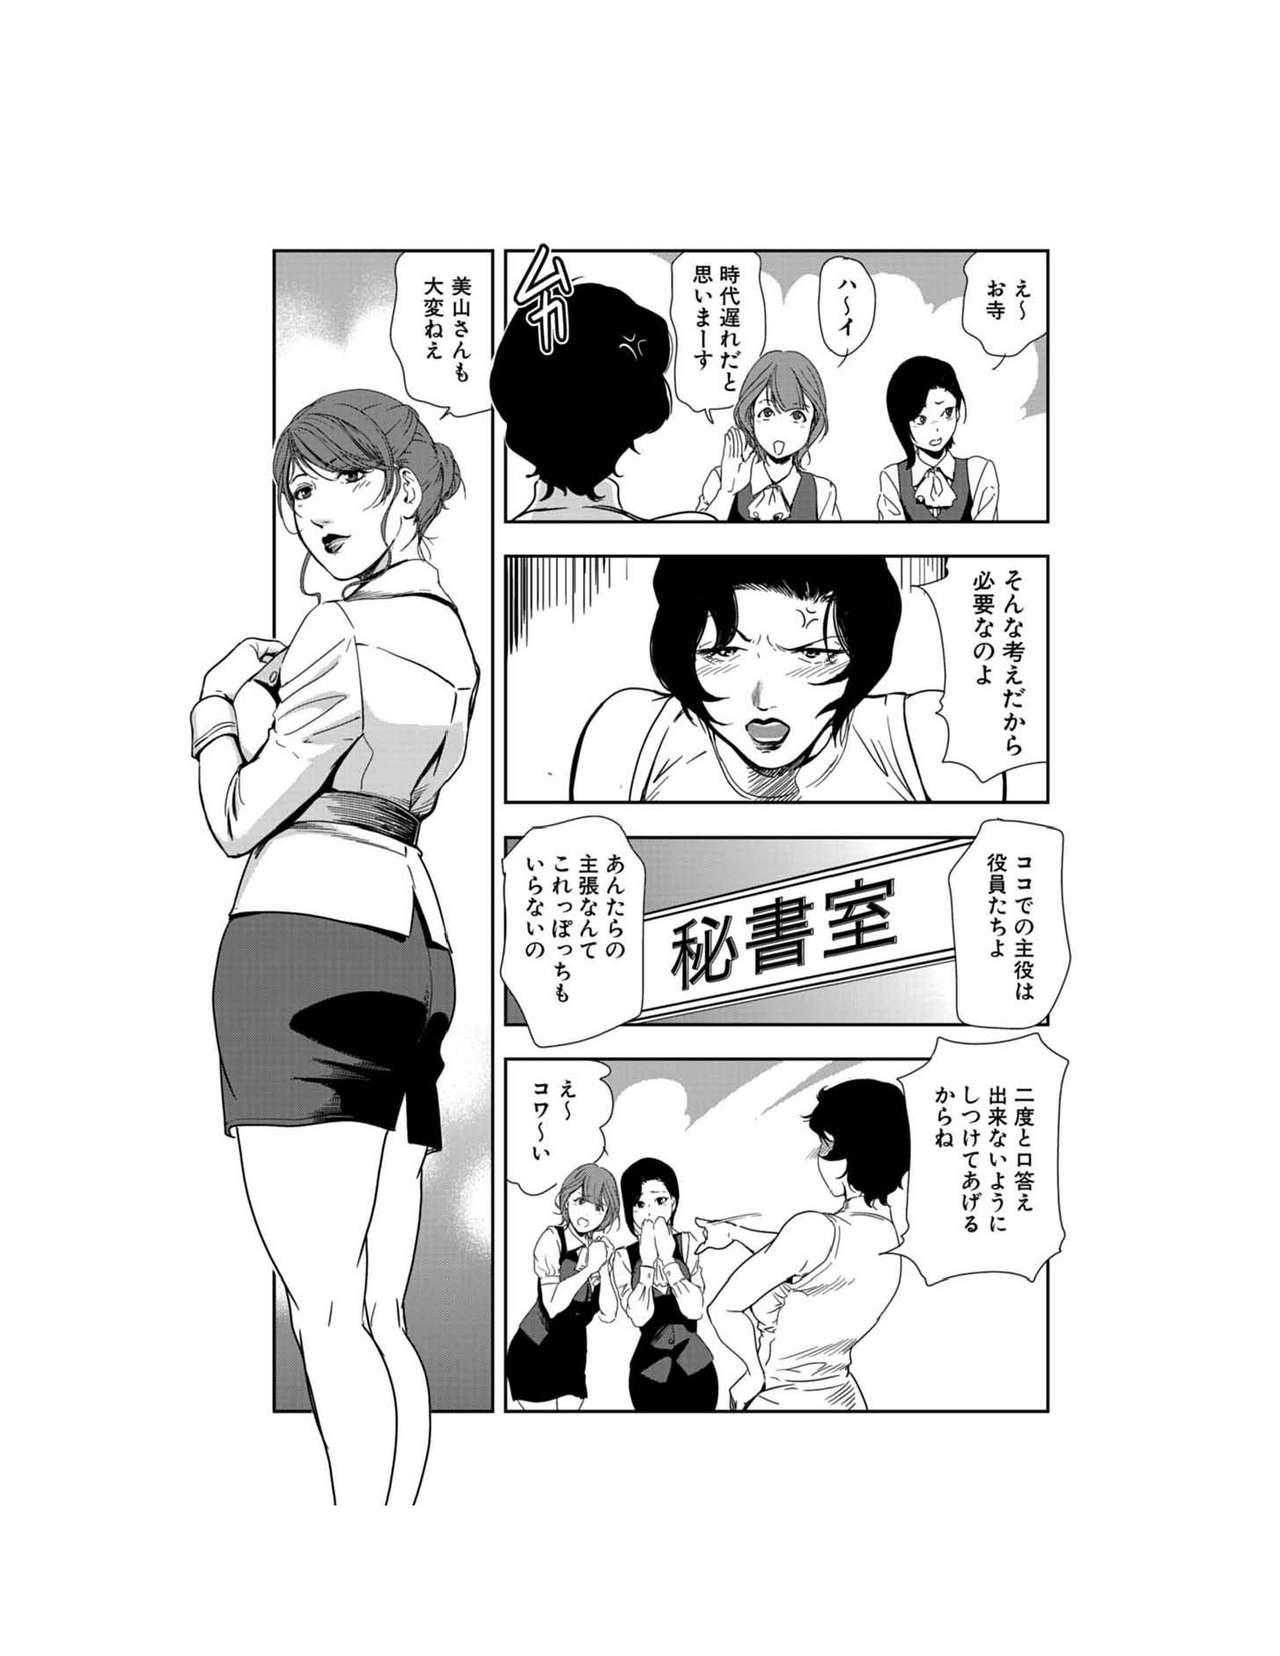 Teensnow Nikuhisyo Yukiko 23 Bigblackcock - Page 4